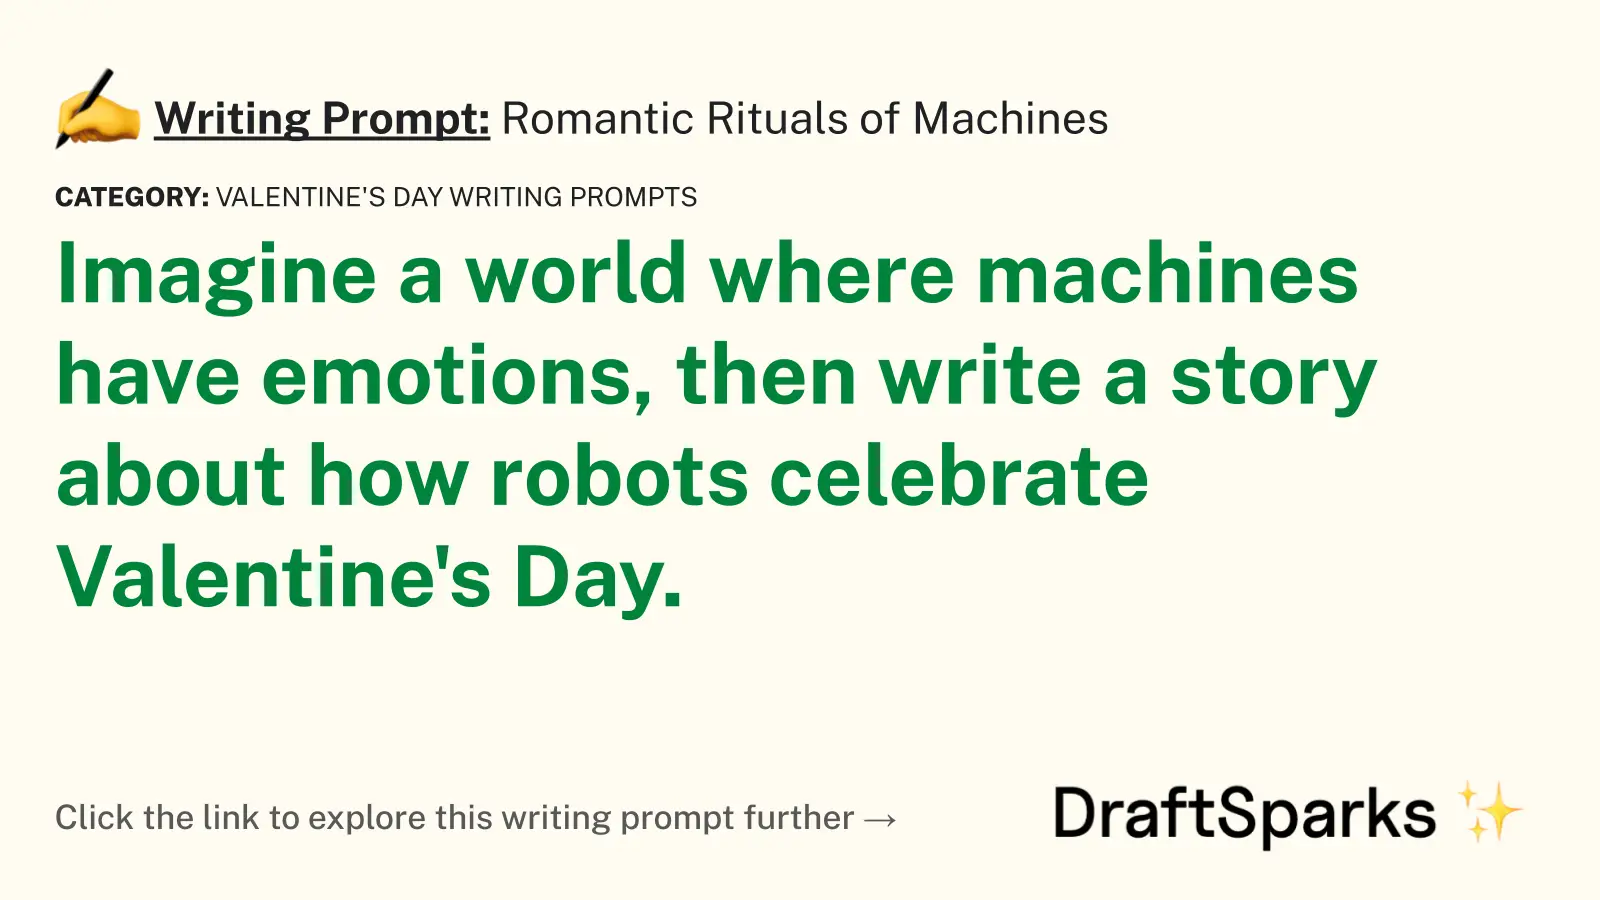 Romantic Rituals of Machines